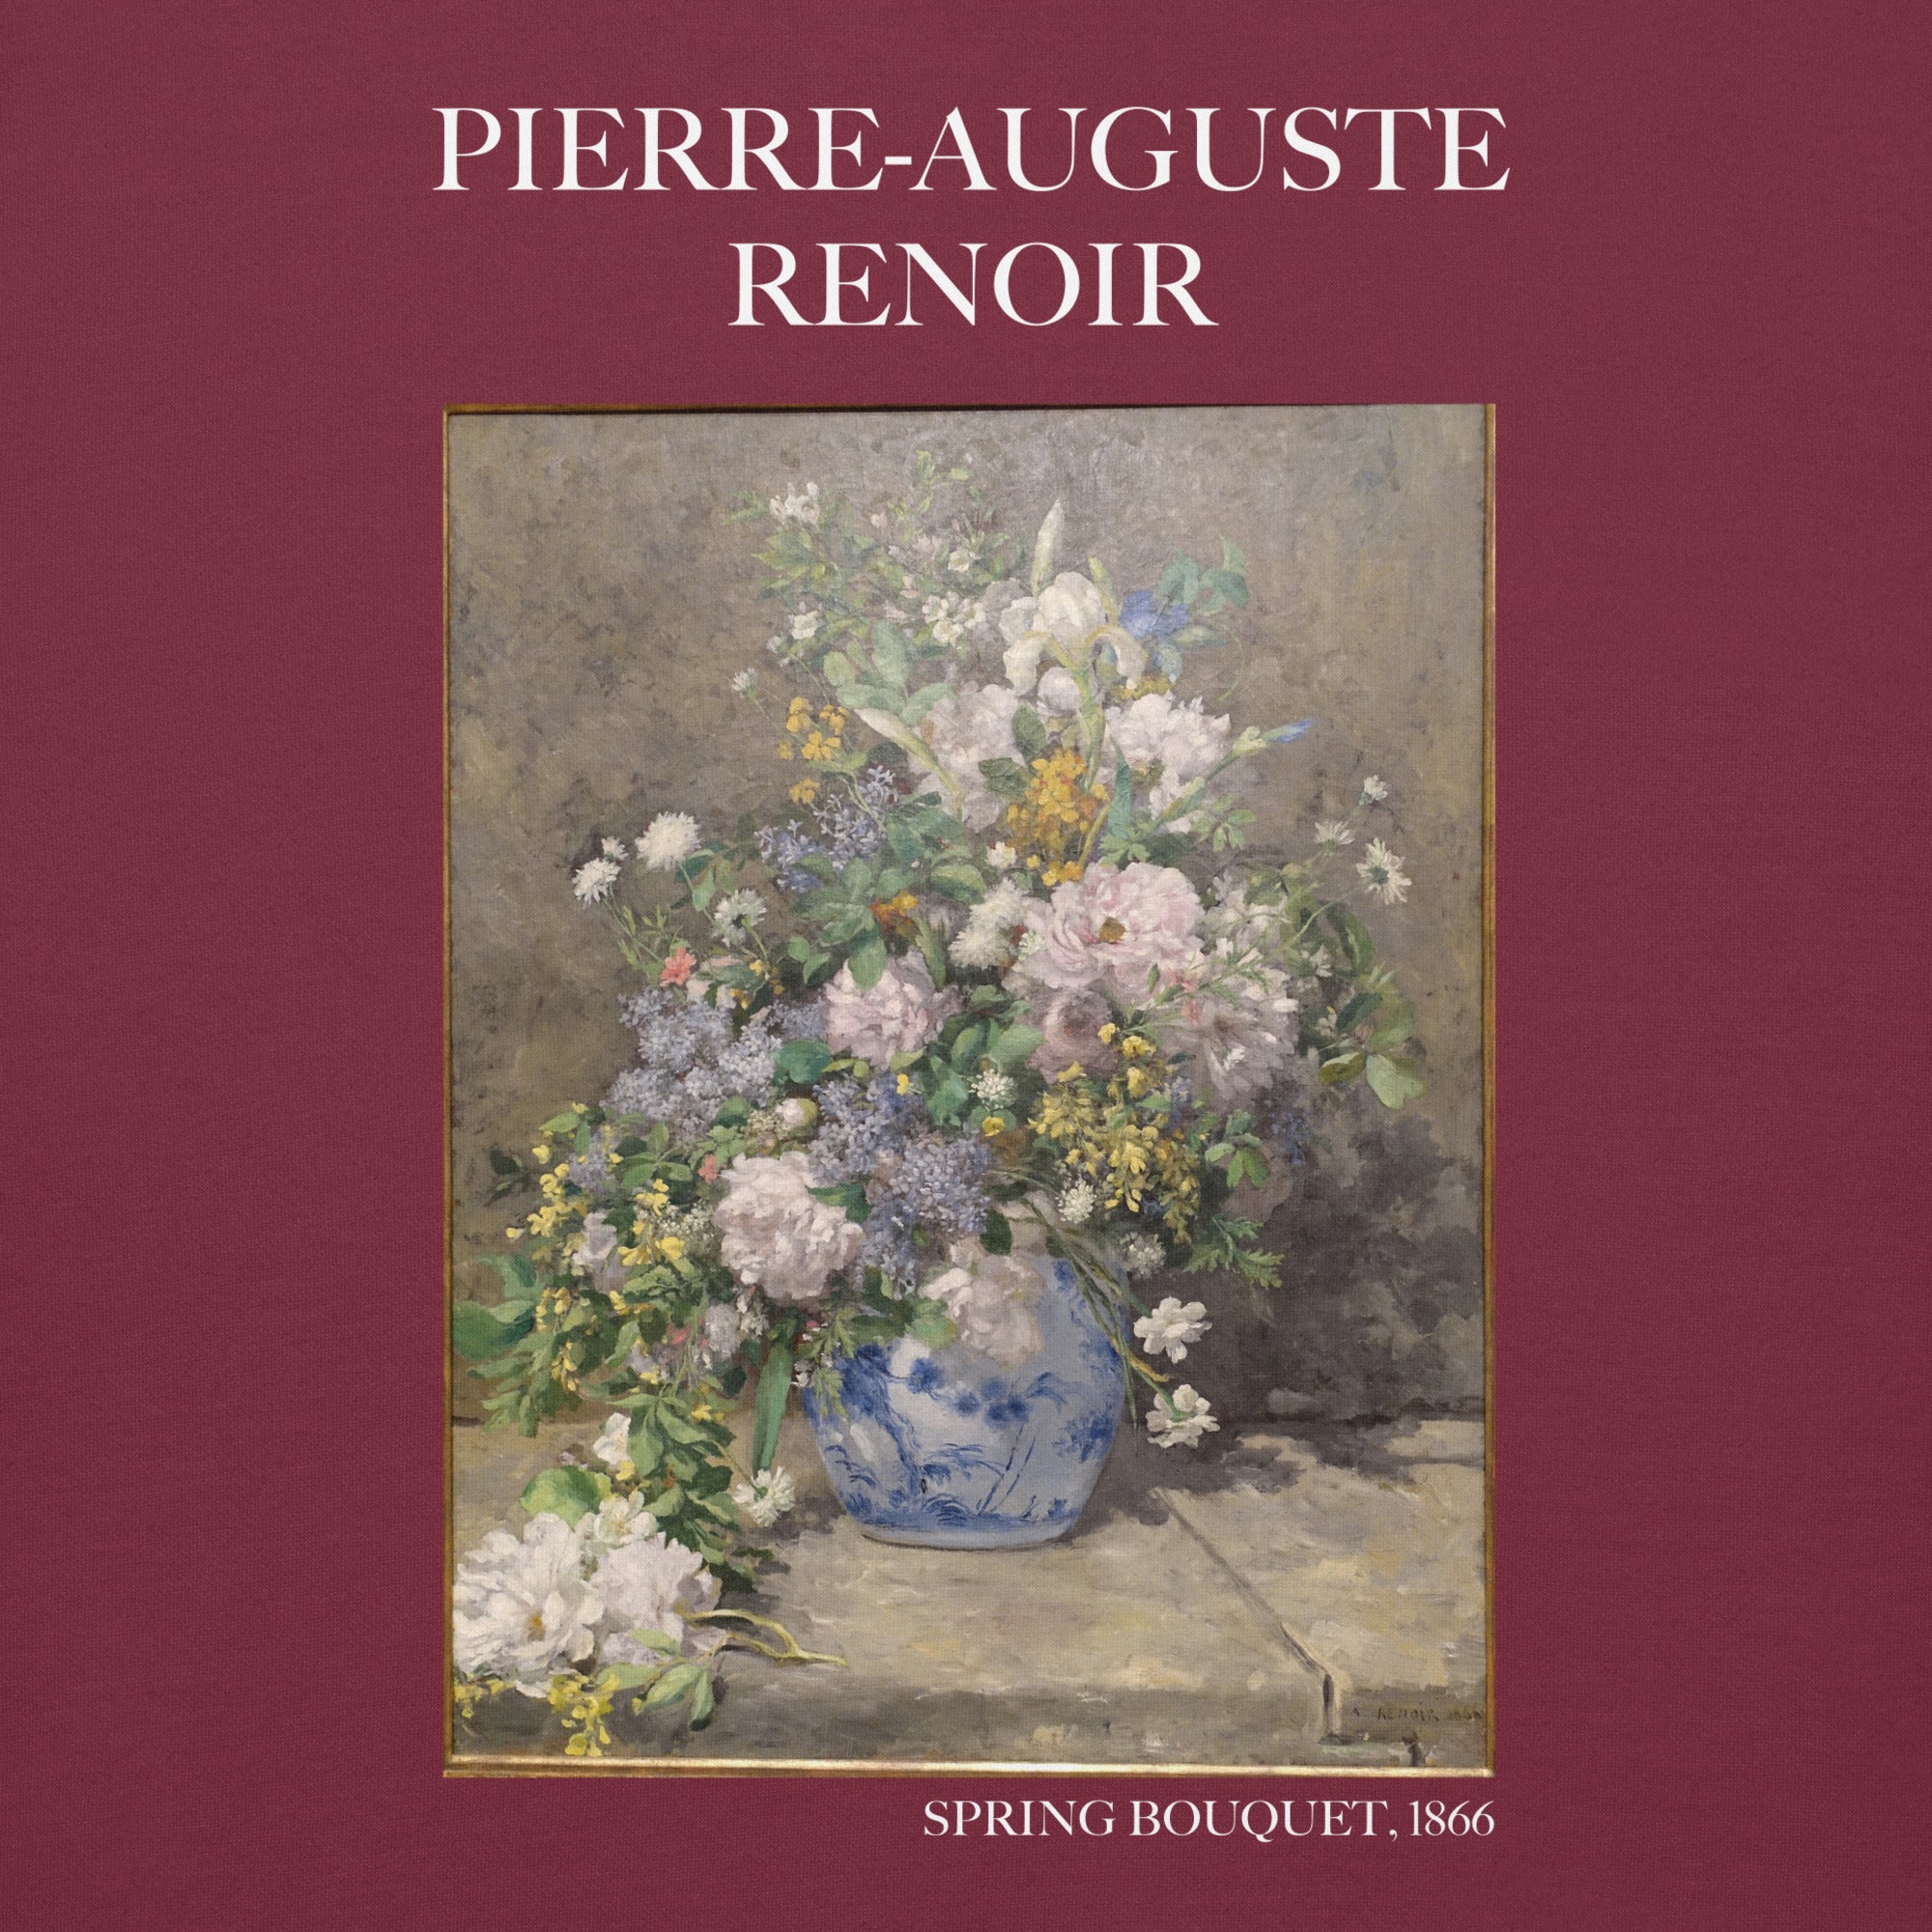 Pierre-Auguste Renoir 'Spring Bouquet' Famous Painting Hoodie | Unisex Premium Art Hoodie